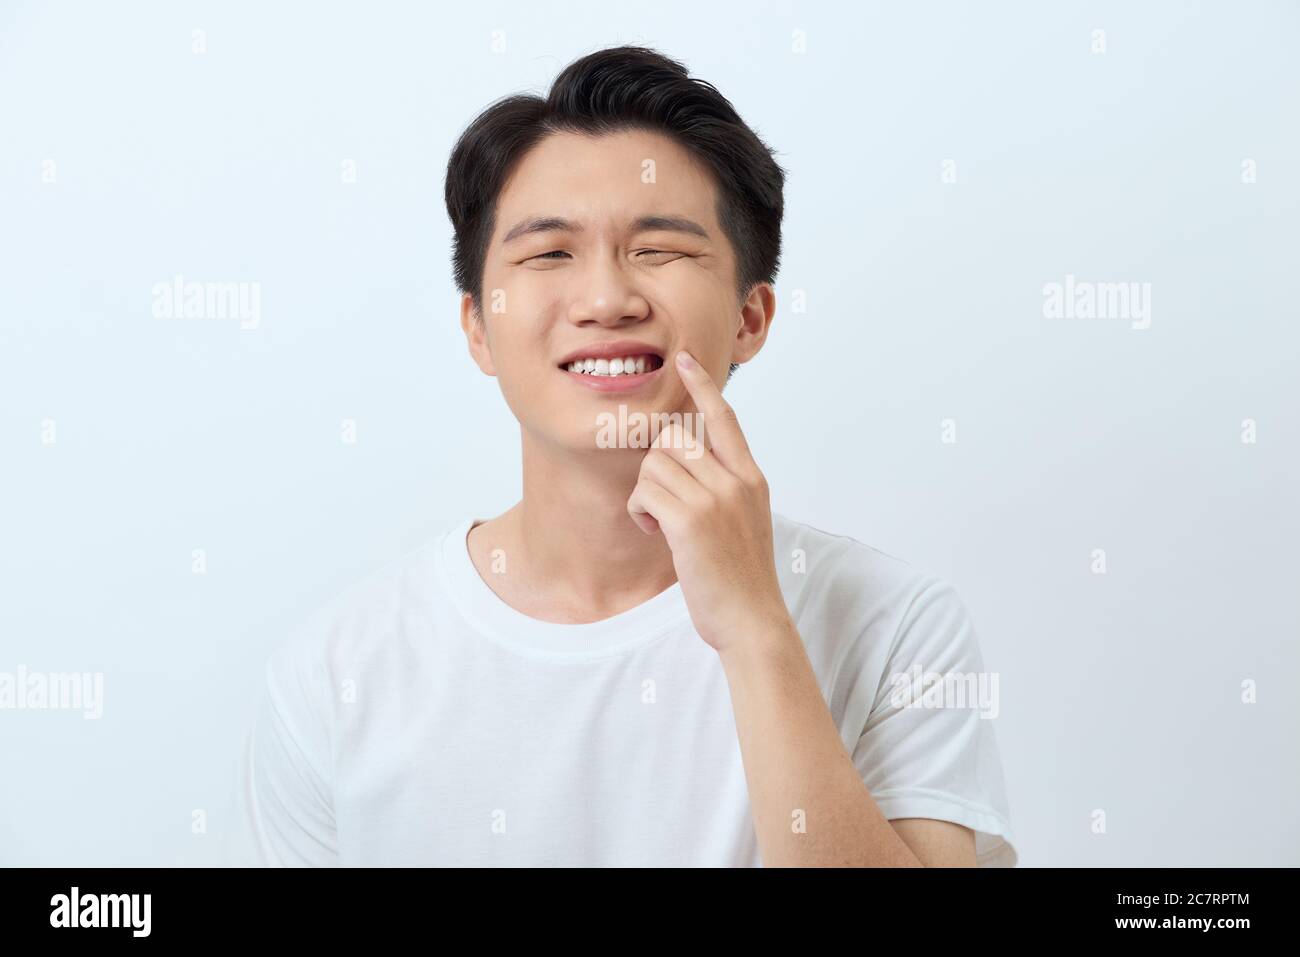 Zahnschmerzen Konzept. Junge männliche Gefühl Schmerzen, leiden unter schlechten Zahnschmerzen mit schmerzhaftem Ausdruck Stockfoto